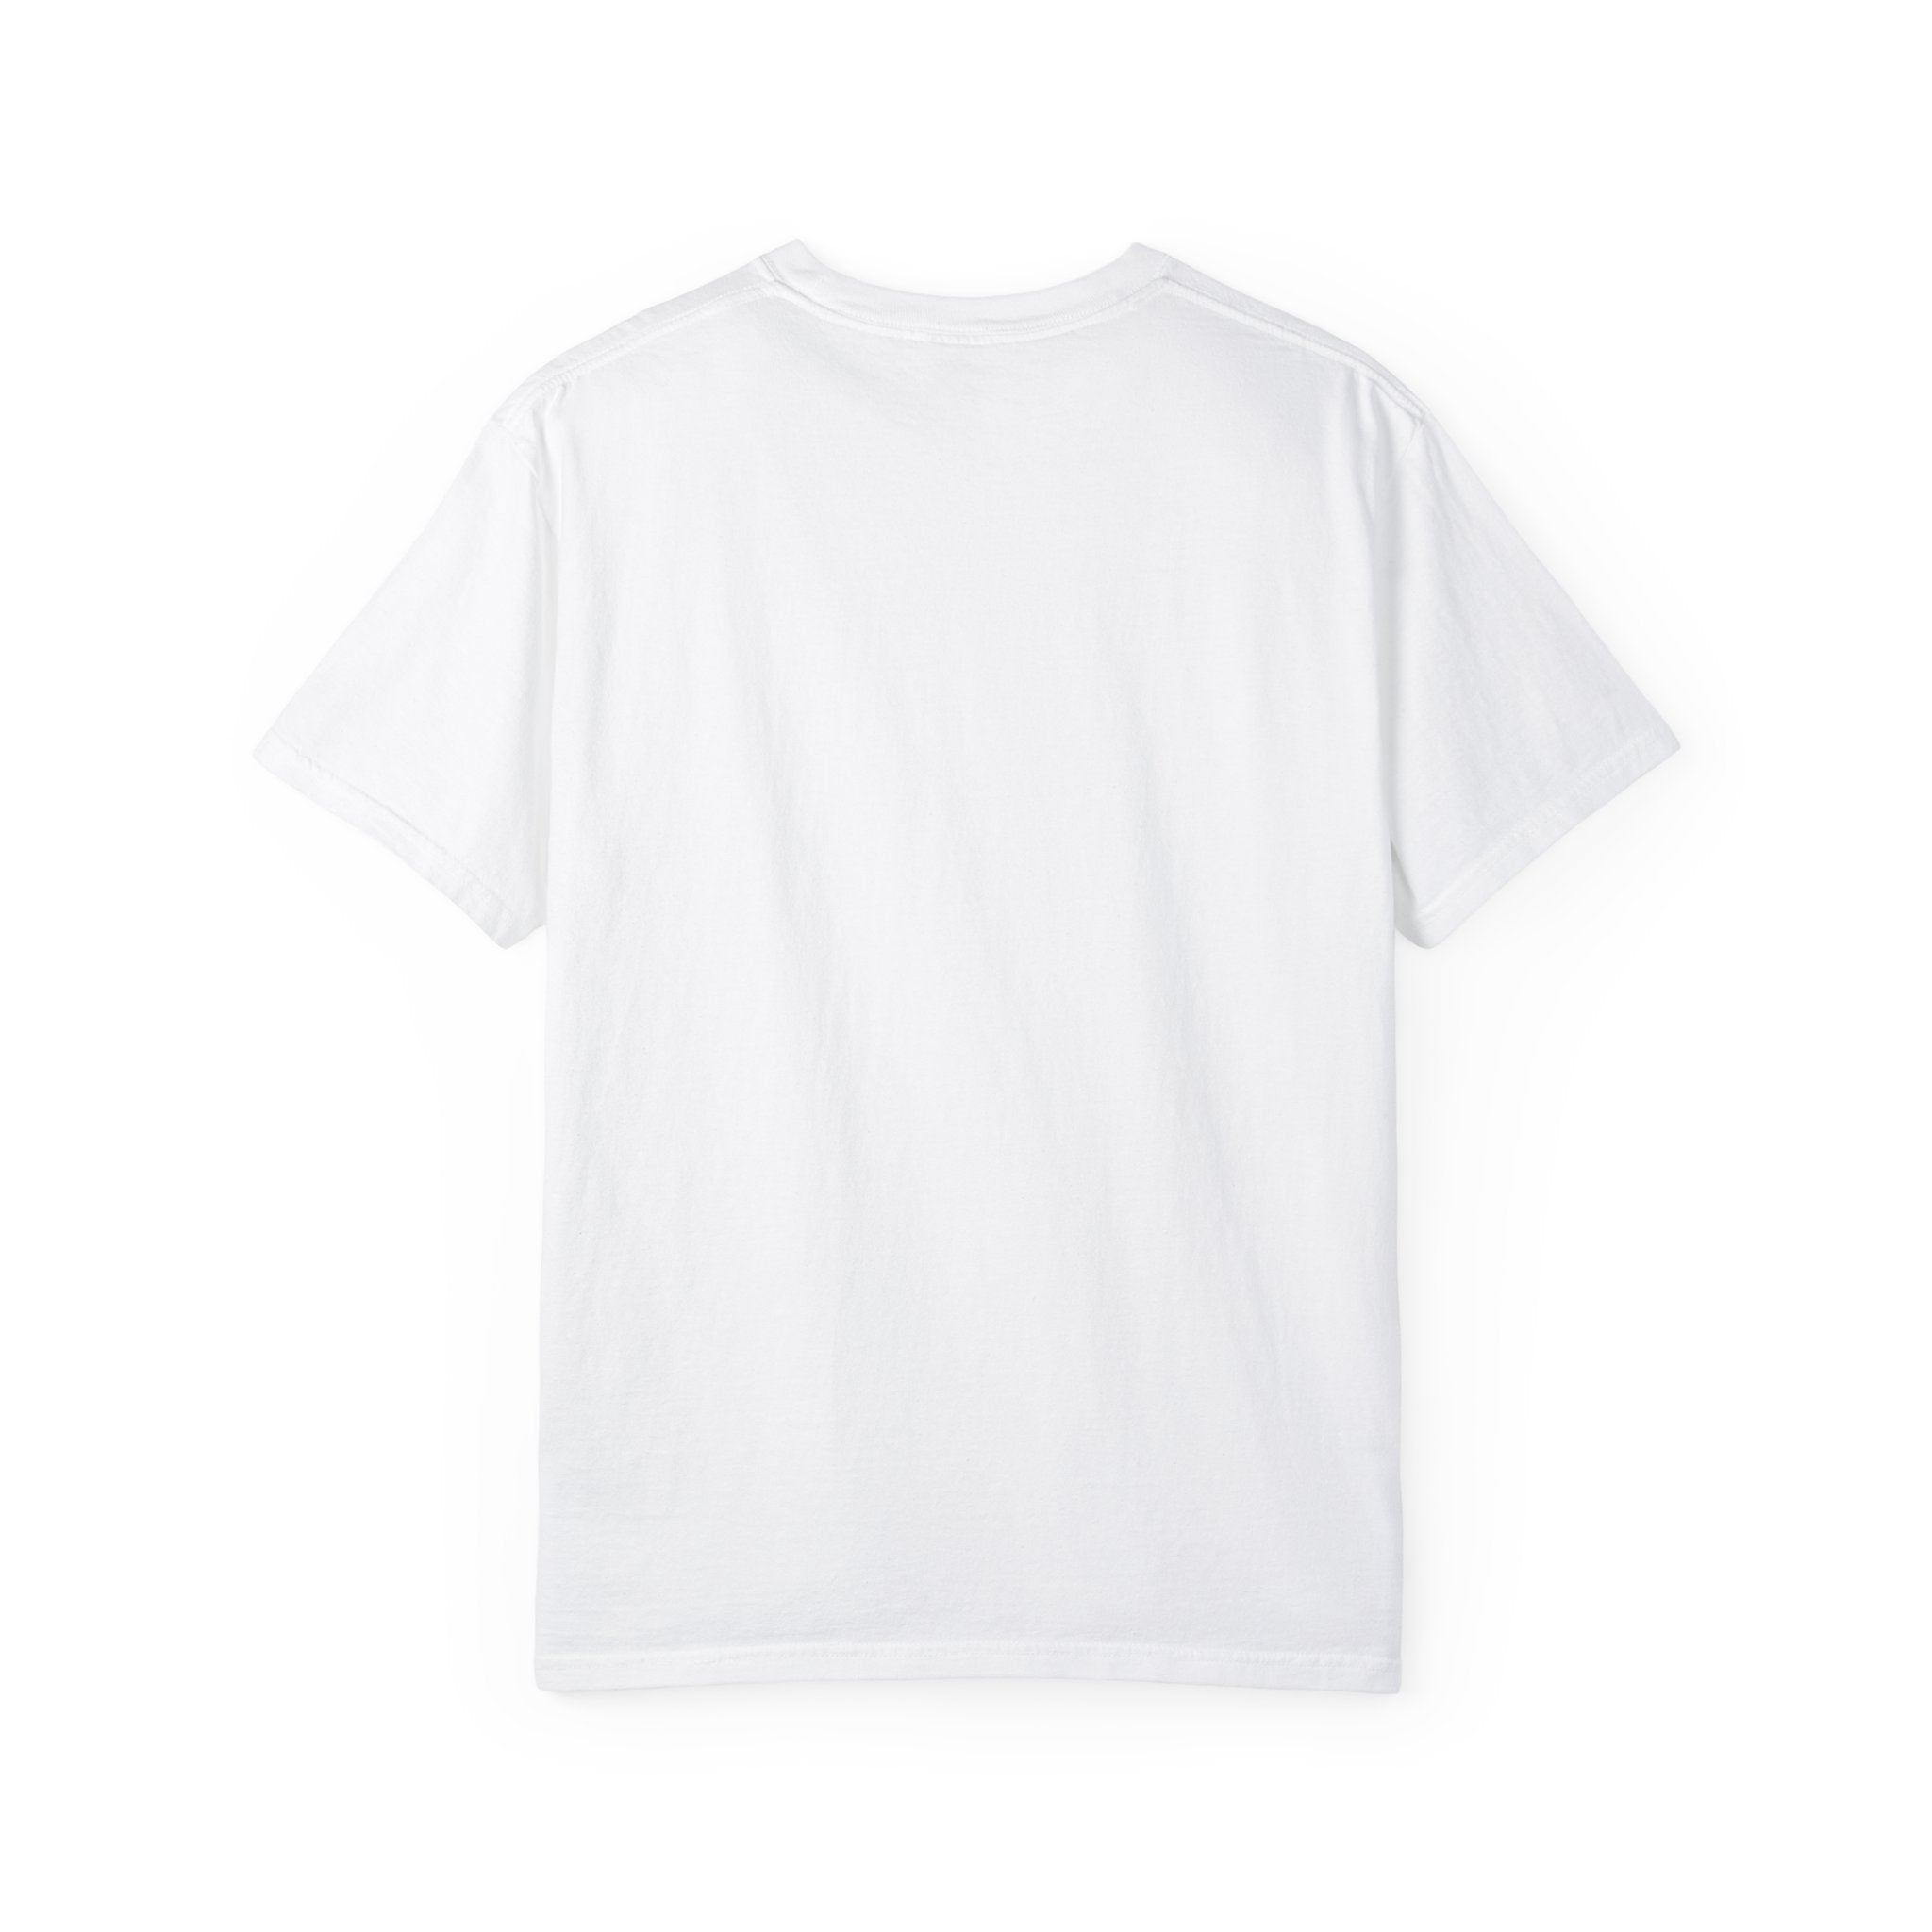 YOGA SLOTH Unisex Garment-Dyed T-shirt